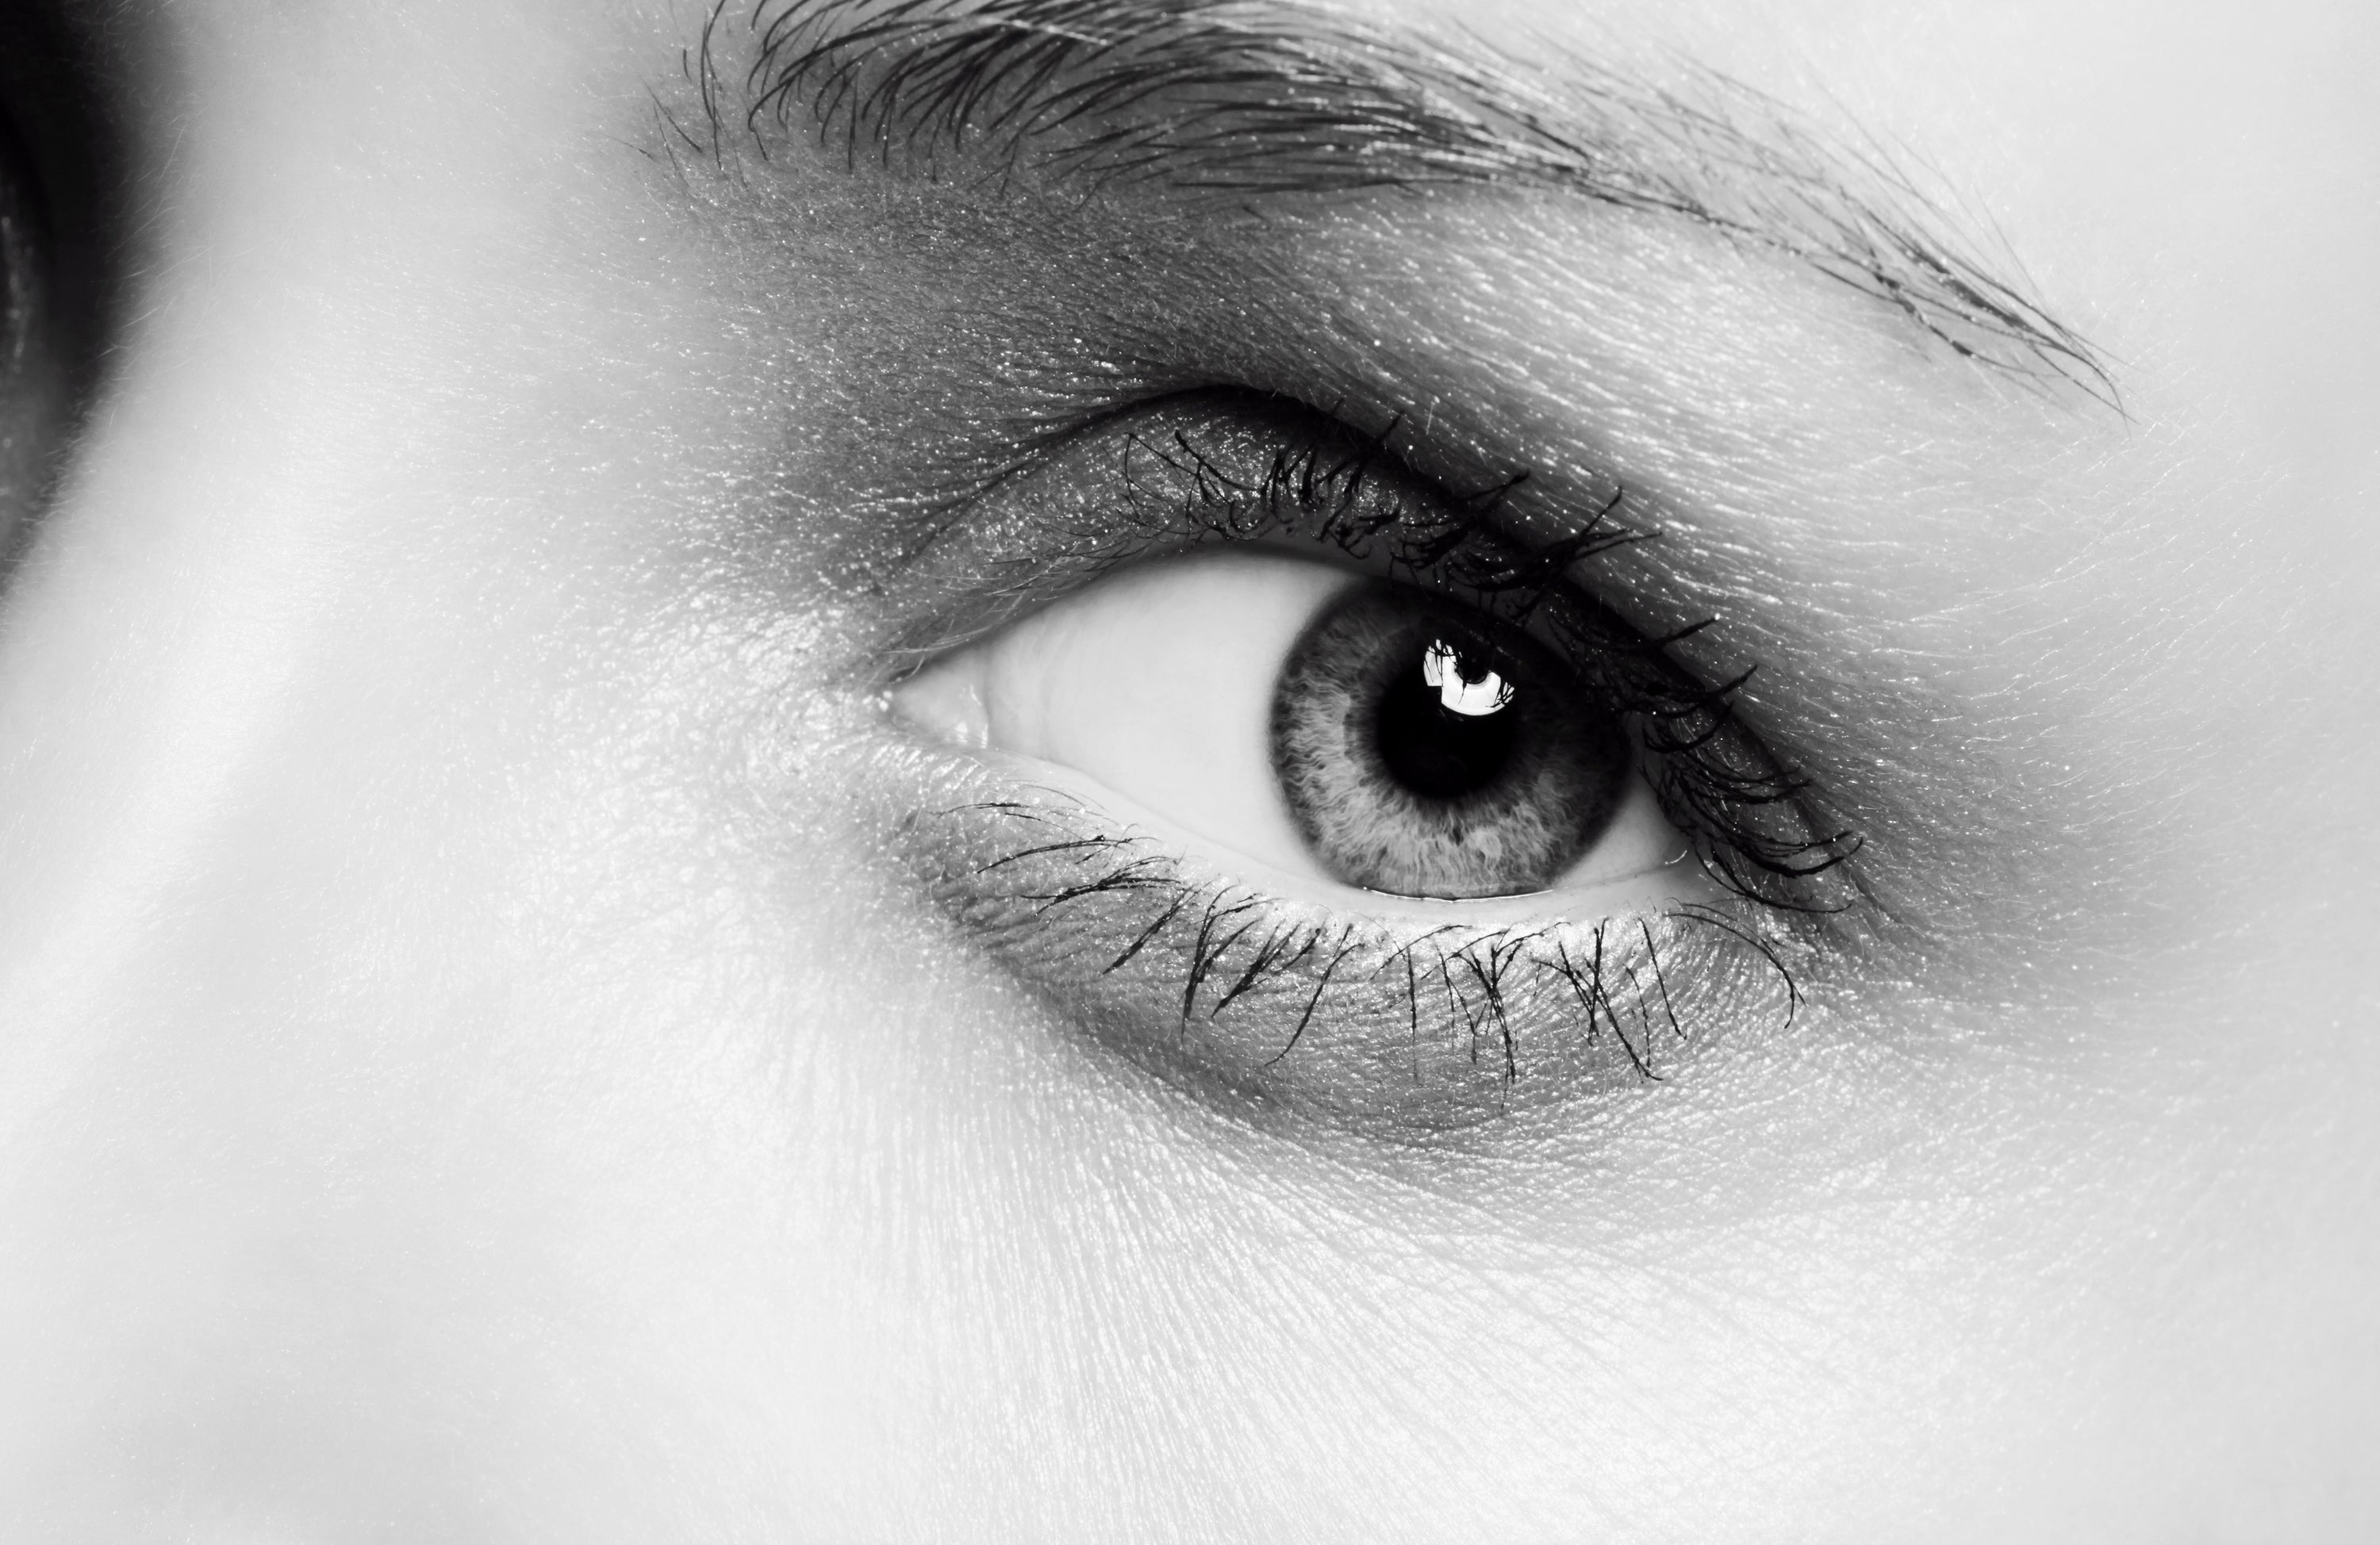 Detailaufnahme eines menschlichen Auges in Schwarzweiß – symbolisiert Aufmerksamkeit auf Augengesundheit.